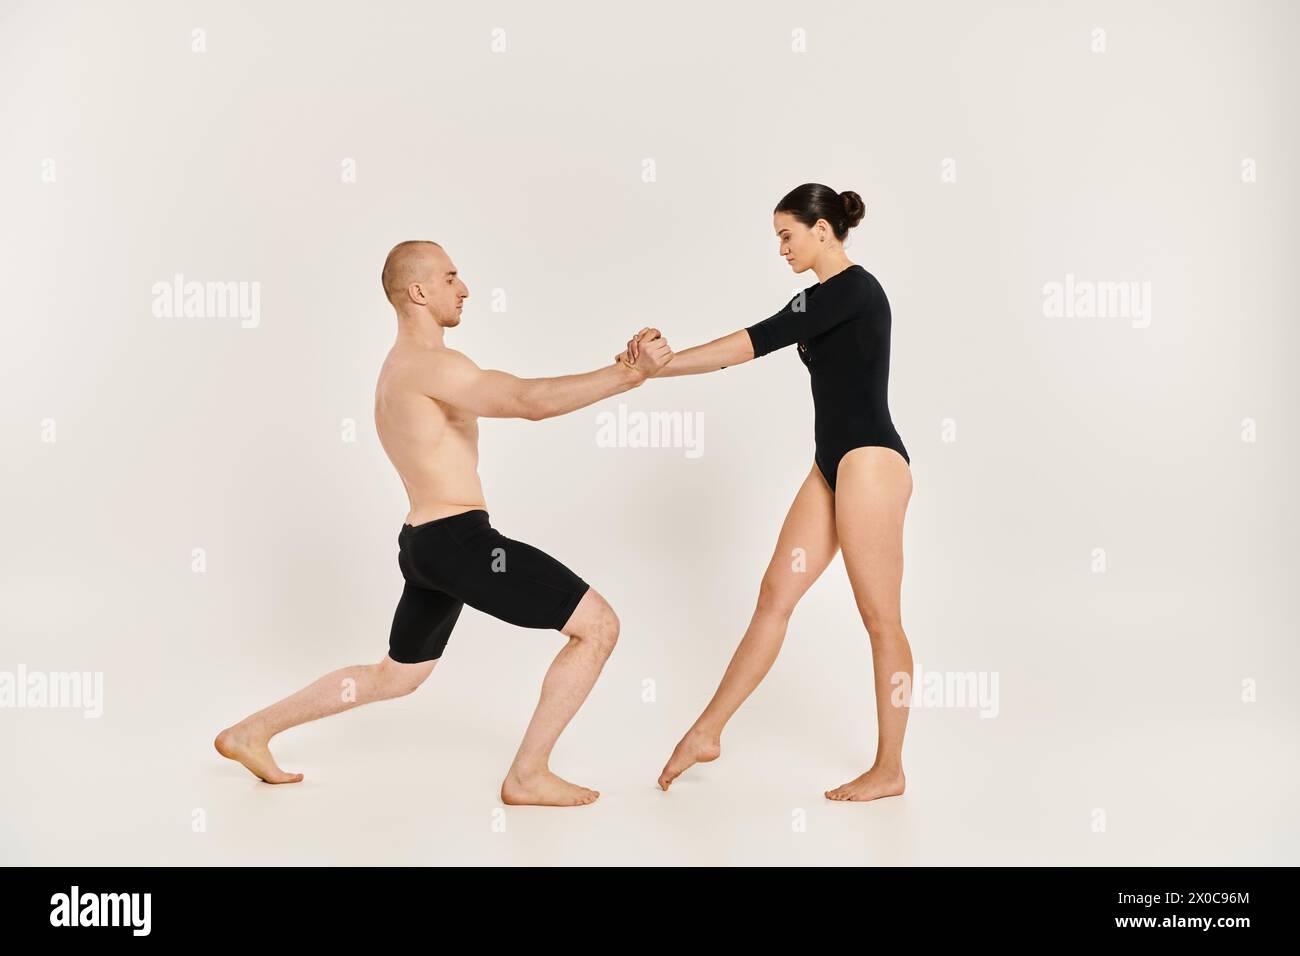 Ein akrobatischer junger Mann und eine akrobatische Frau tanzen elegant zusammen in einem Studio und zeigen ihre anmutigen Bewegungen. Stockfoto